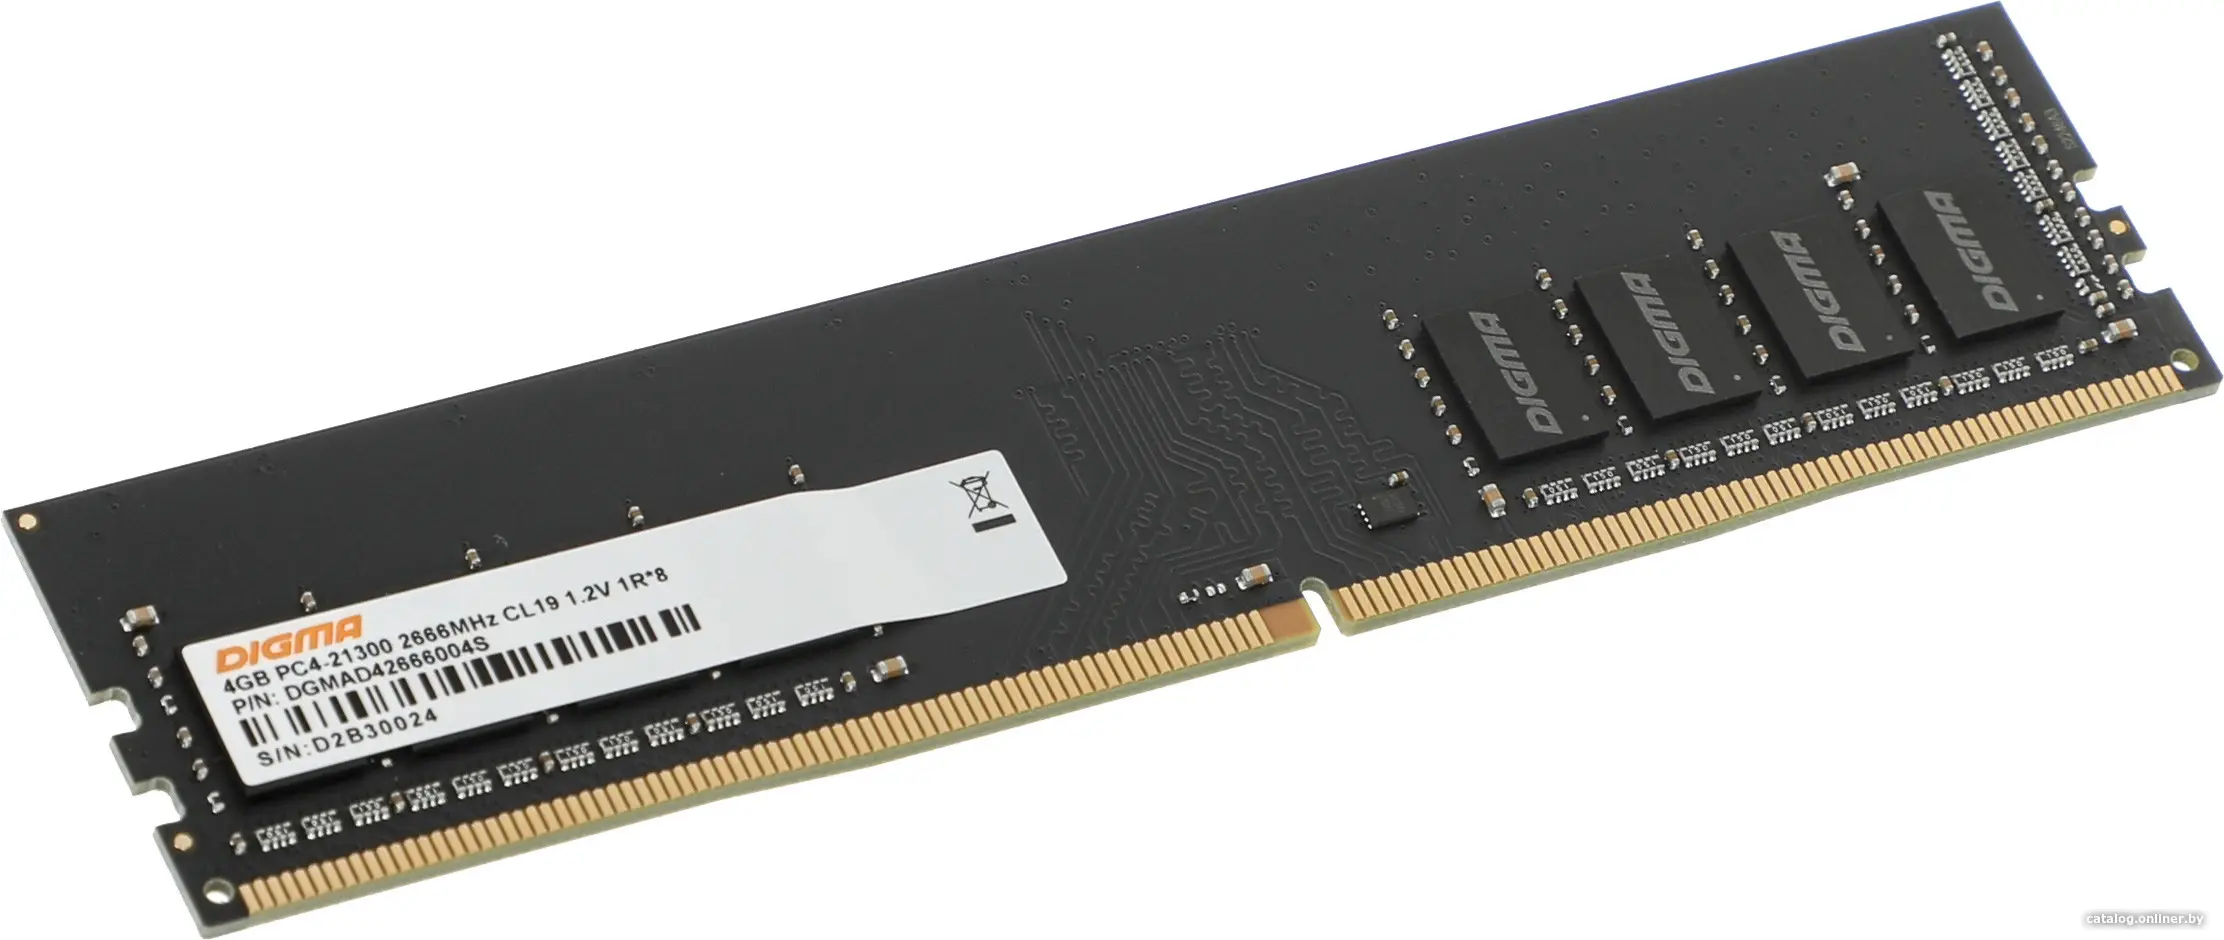 Купить Оперативная память Digma DDR4 4Gb 2666MHz (DGMAD42666004S), цена, опт и розница